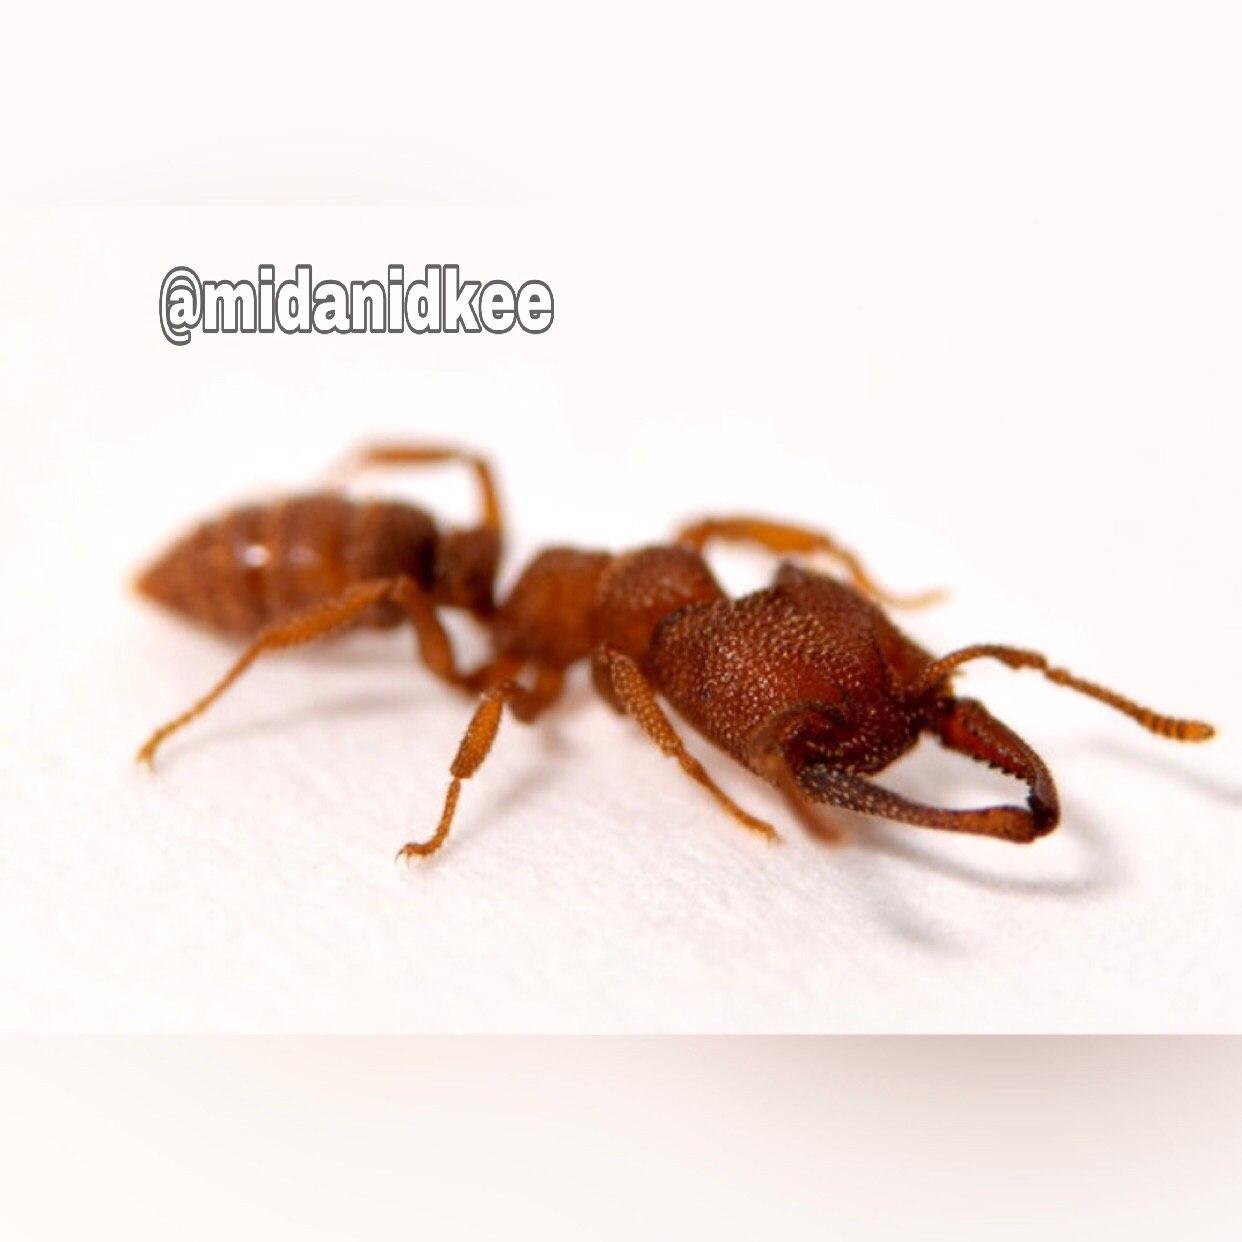 این نوع "مورچه دراکولایی" فِرز و سریع‌ترین موجود دنیاست!  این مورچه میتونه آرواره‌هاش رو با سرعت 200 مایل بر ساعت به هم بزنه که 5000 هزار با 